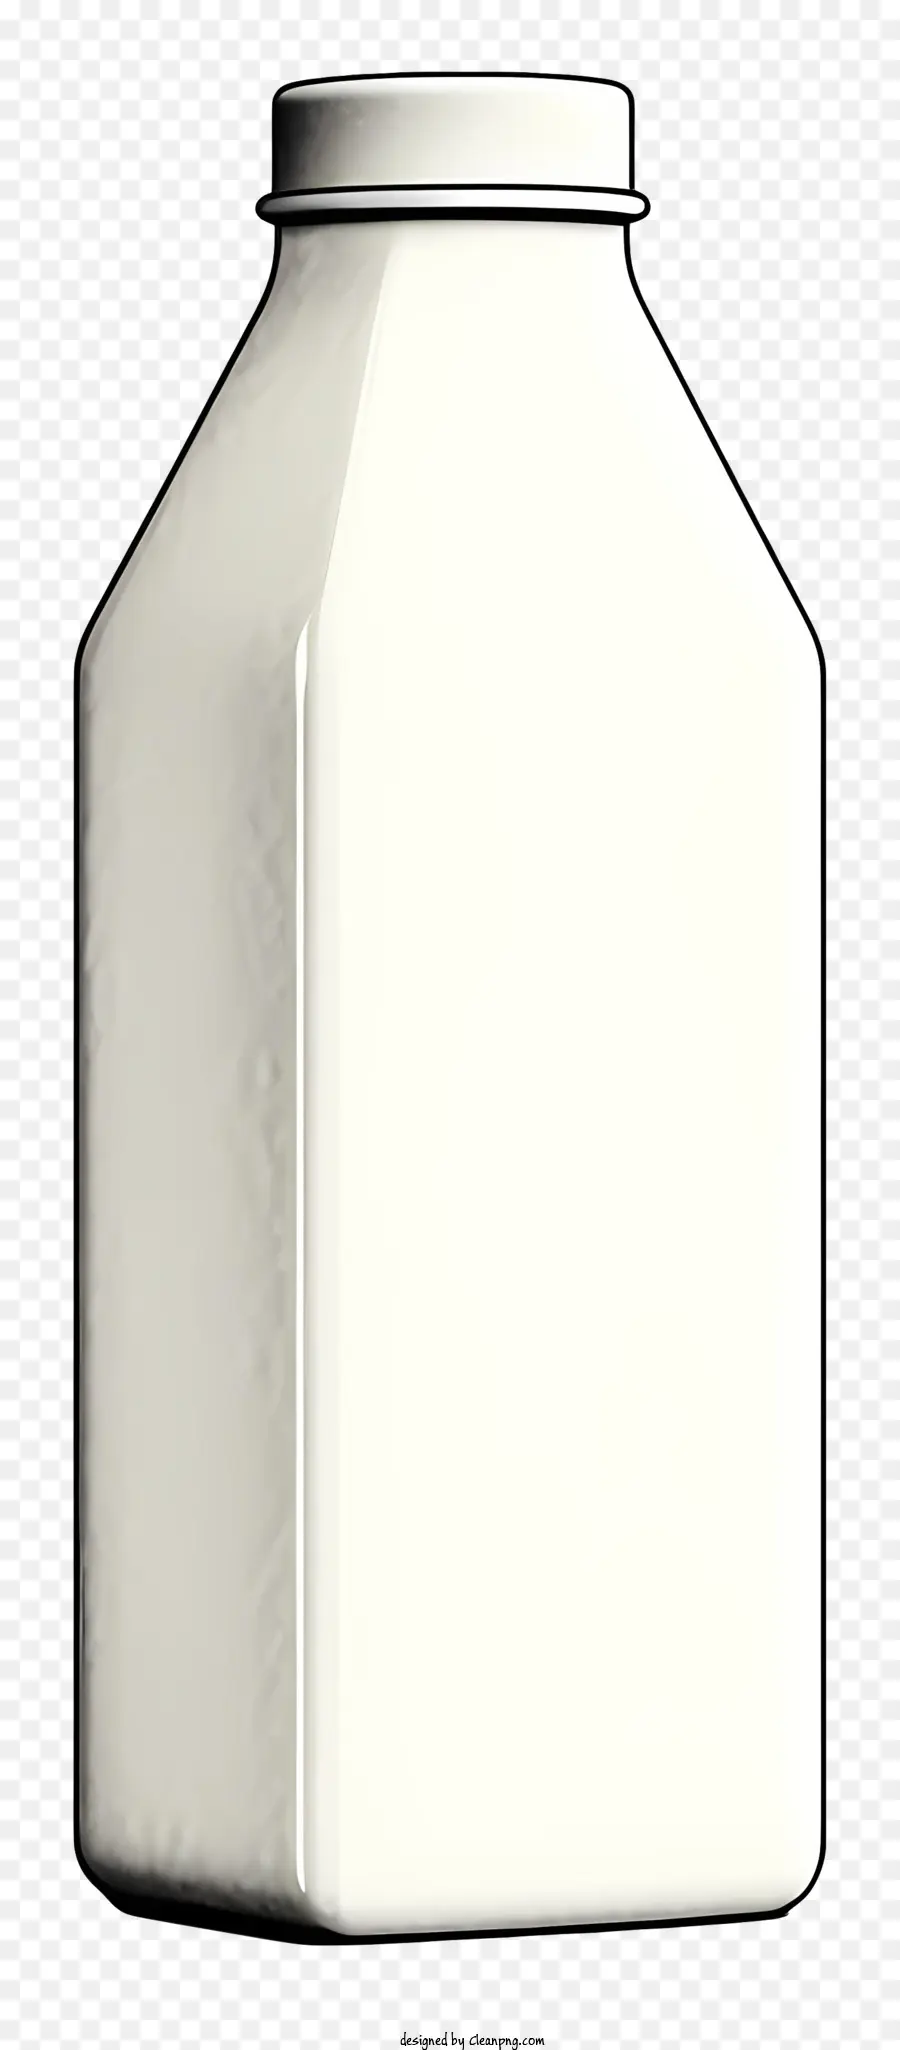 bottiglia di plastica - Bottiglia di plastica bianca con corpo rotondo e collo curvo, seduto su sfondo nero, con grande etichetta rotonda parzialmente coperta da adesivo bianco con testo nero